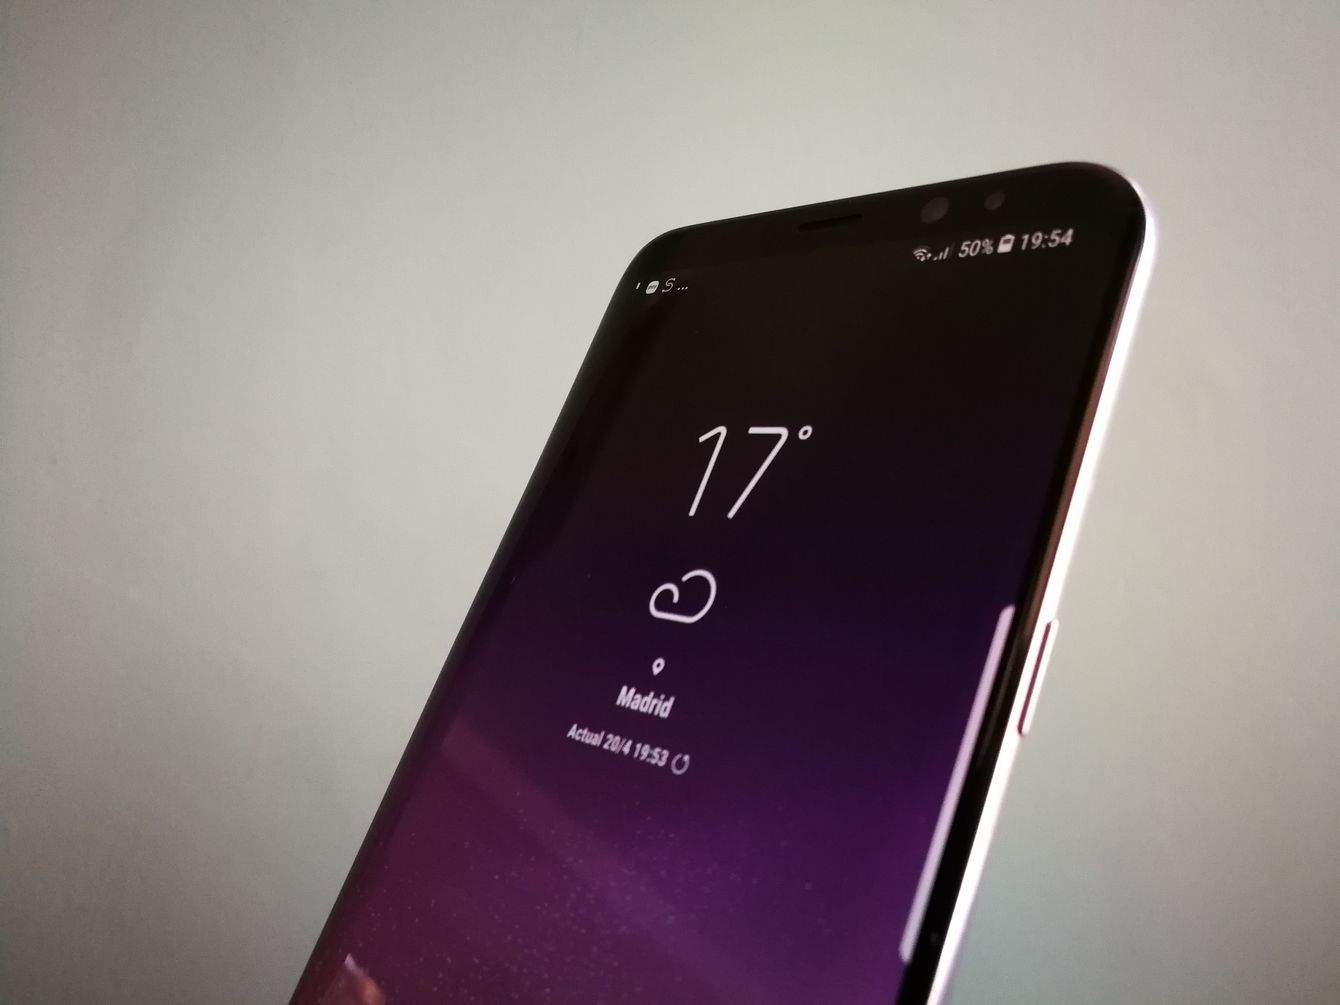 Ponemos a prueba el Samsung Galaxy S8+ 11